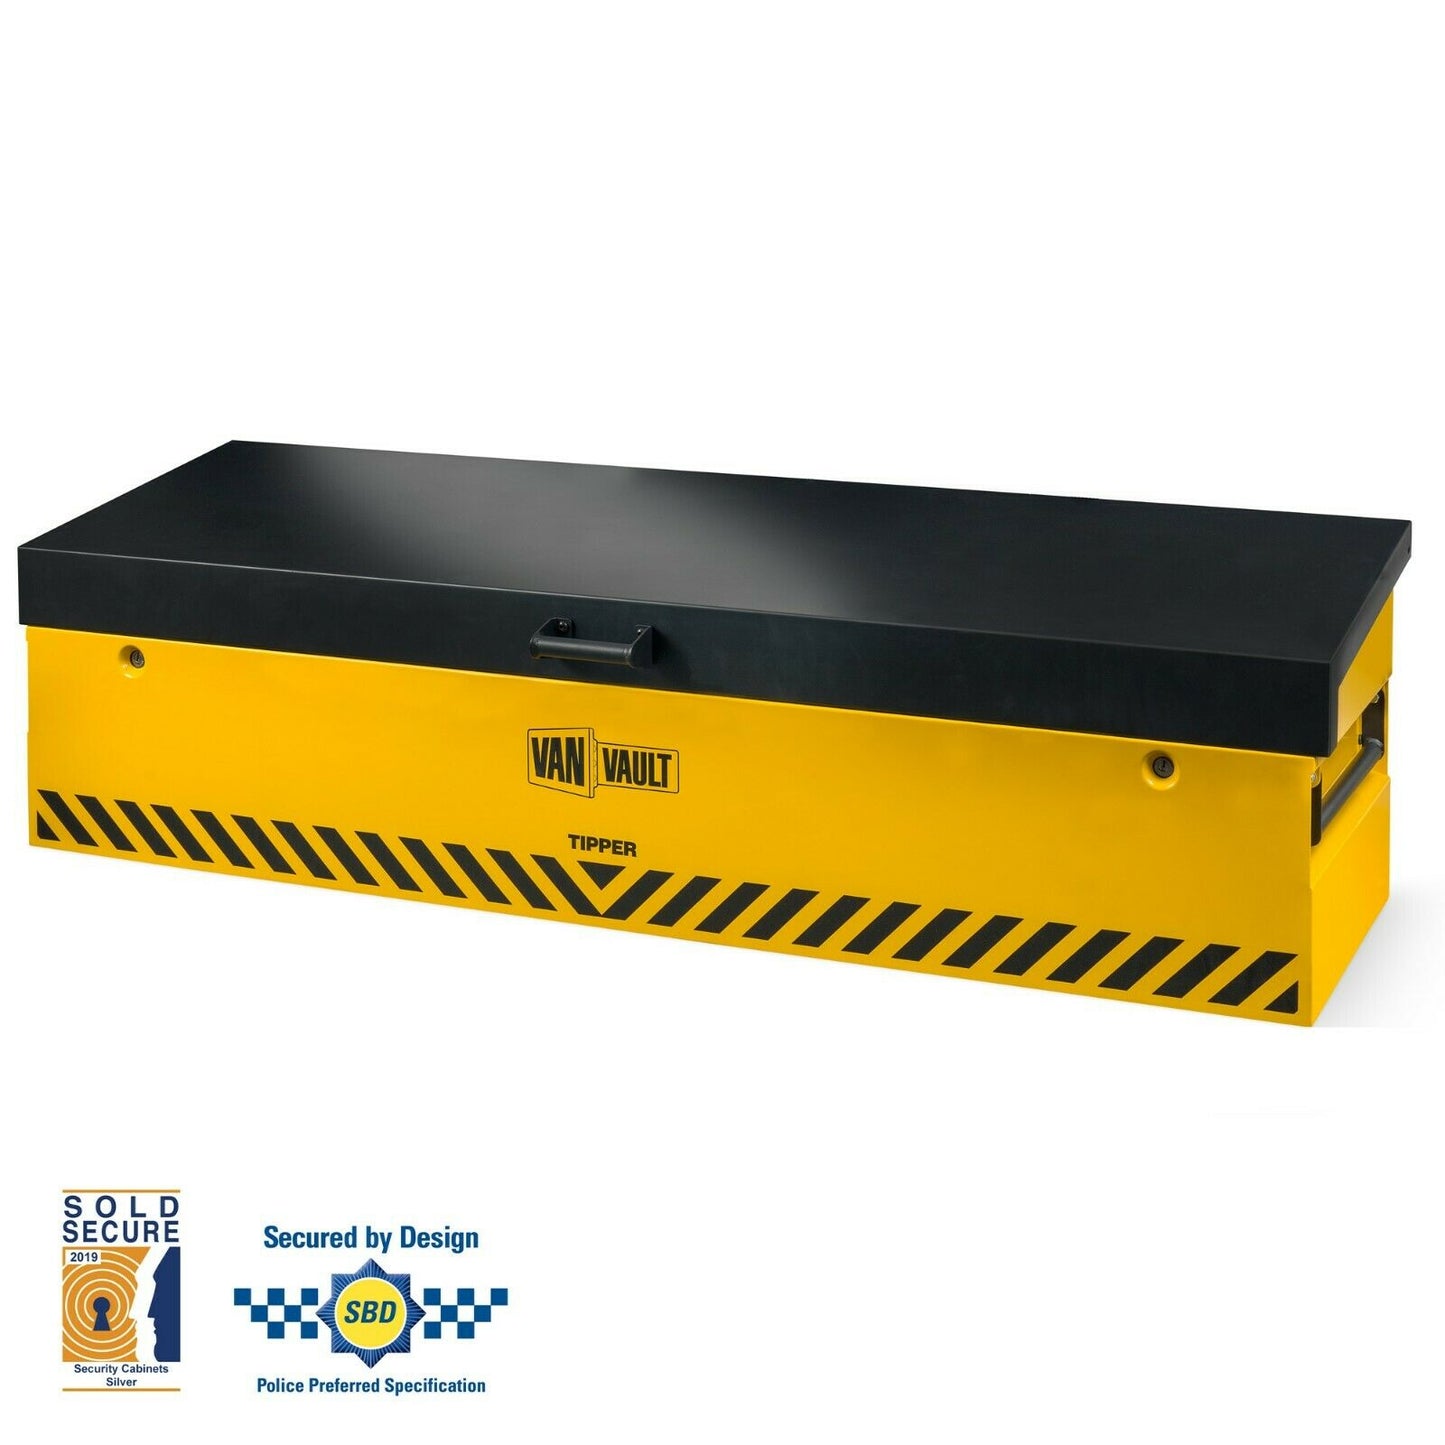 New Van Vault Tipper S10830 Security Storage Box